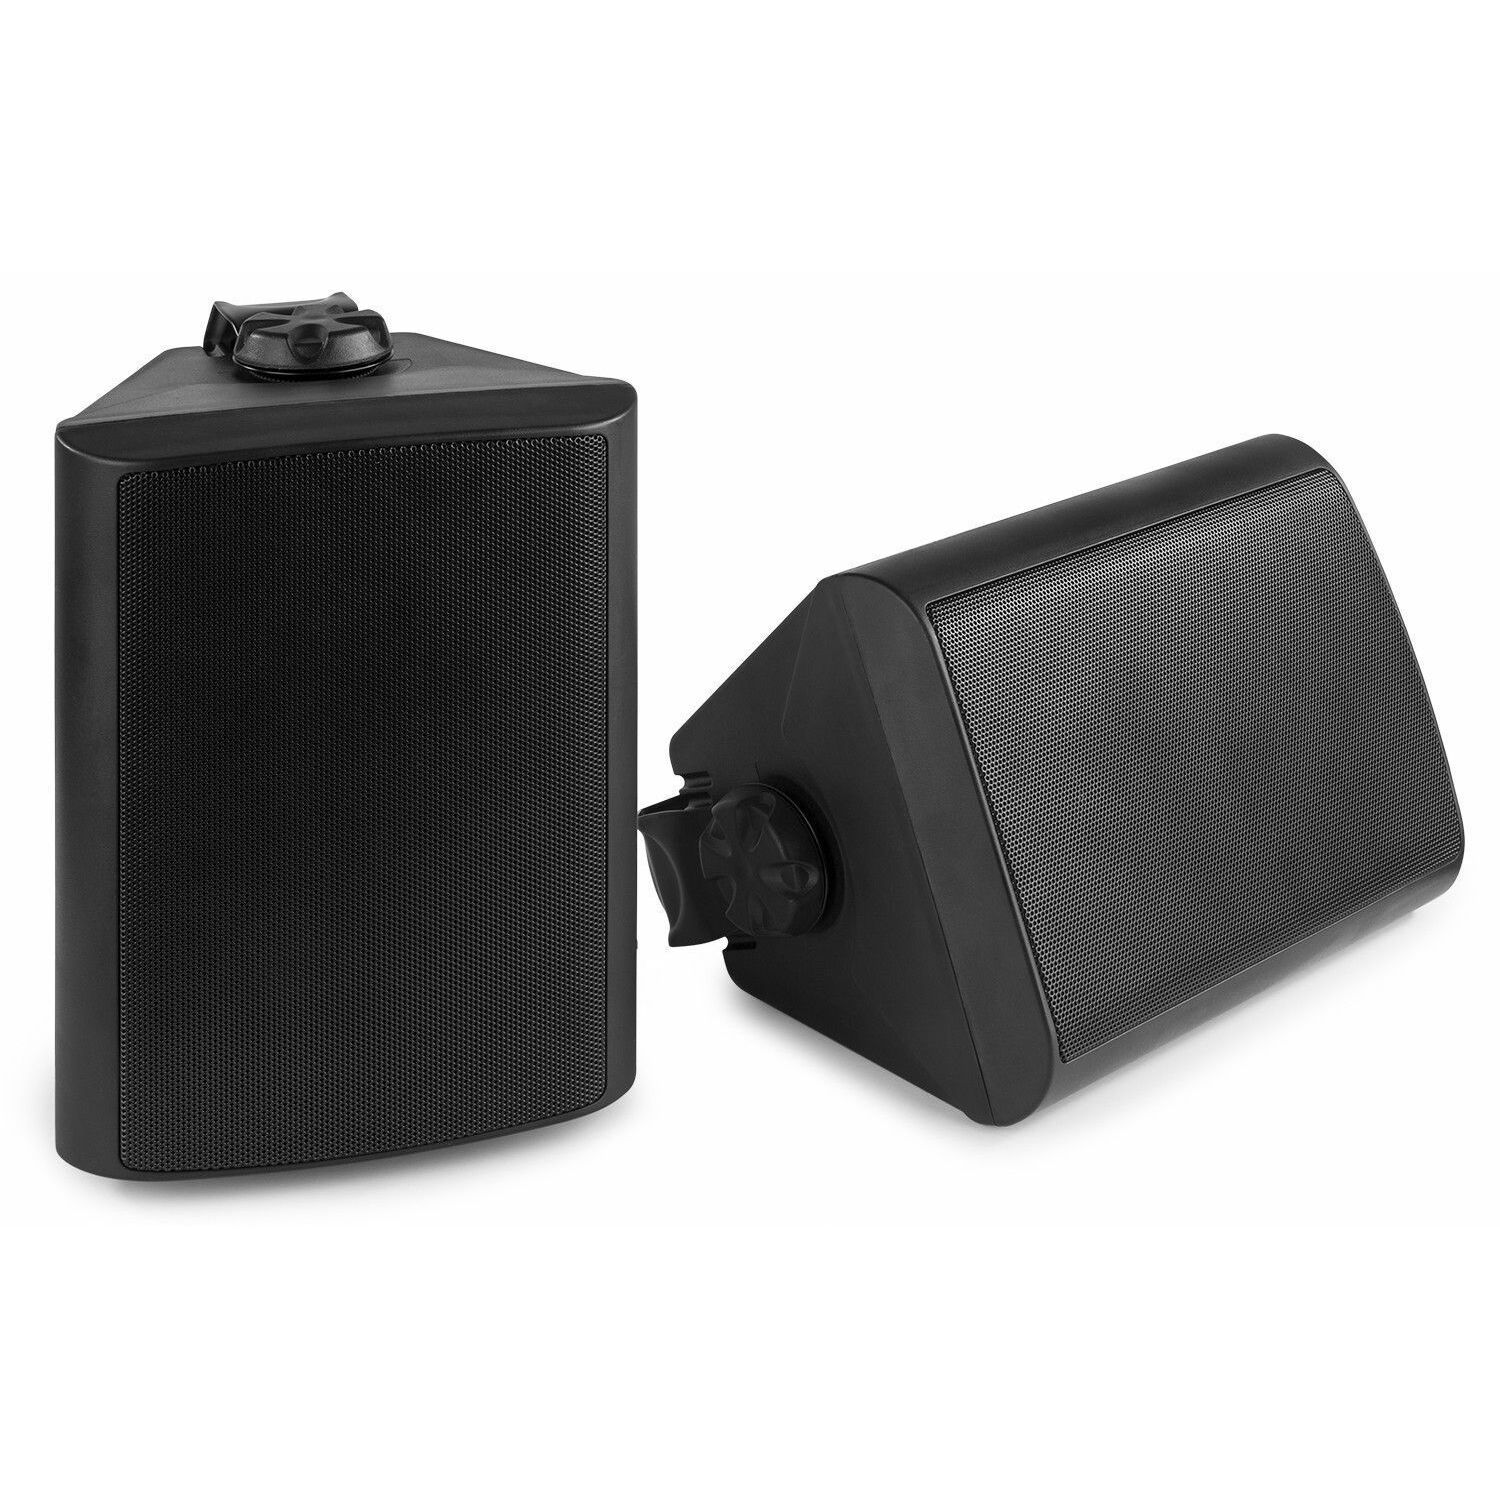 Retourdeal - Power Dynamics BGO50 Zwarte speakerset voor binnen en